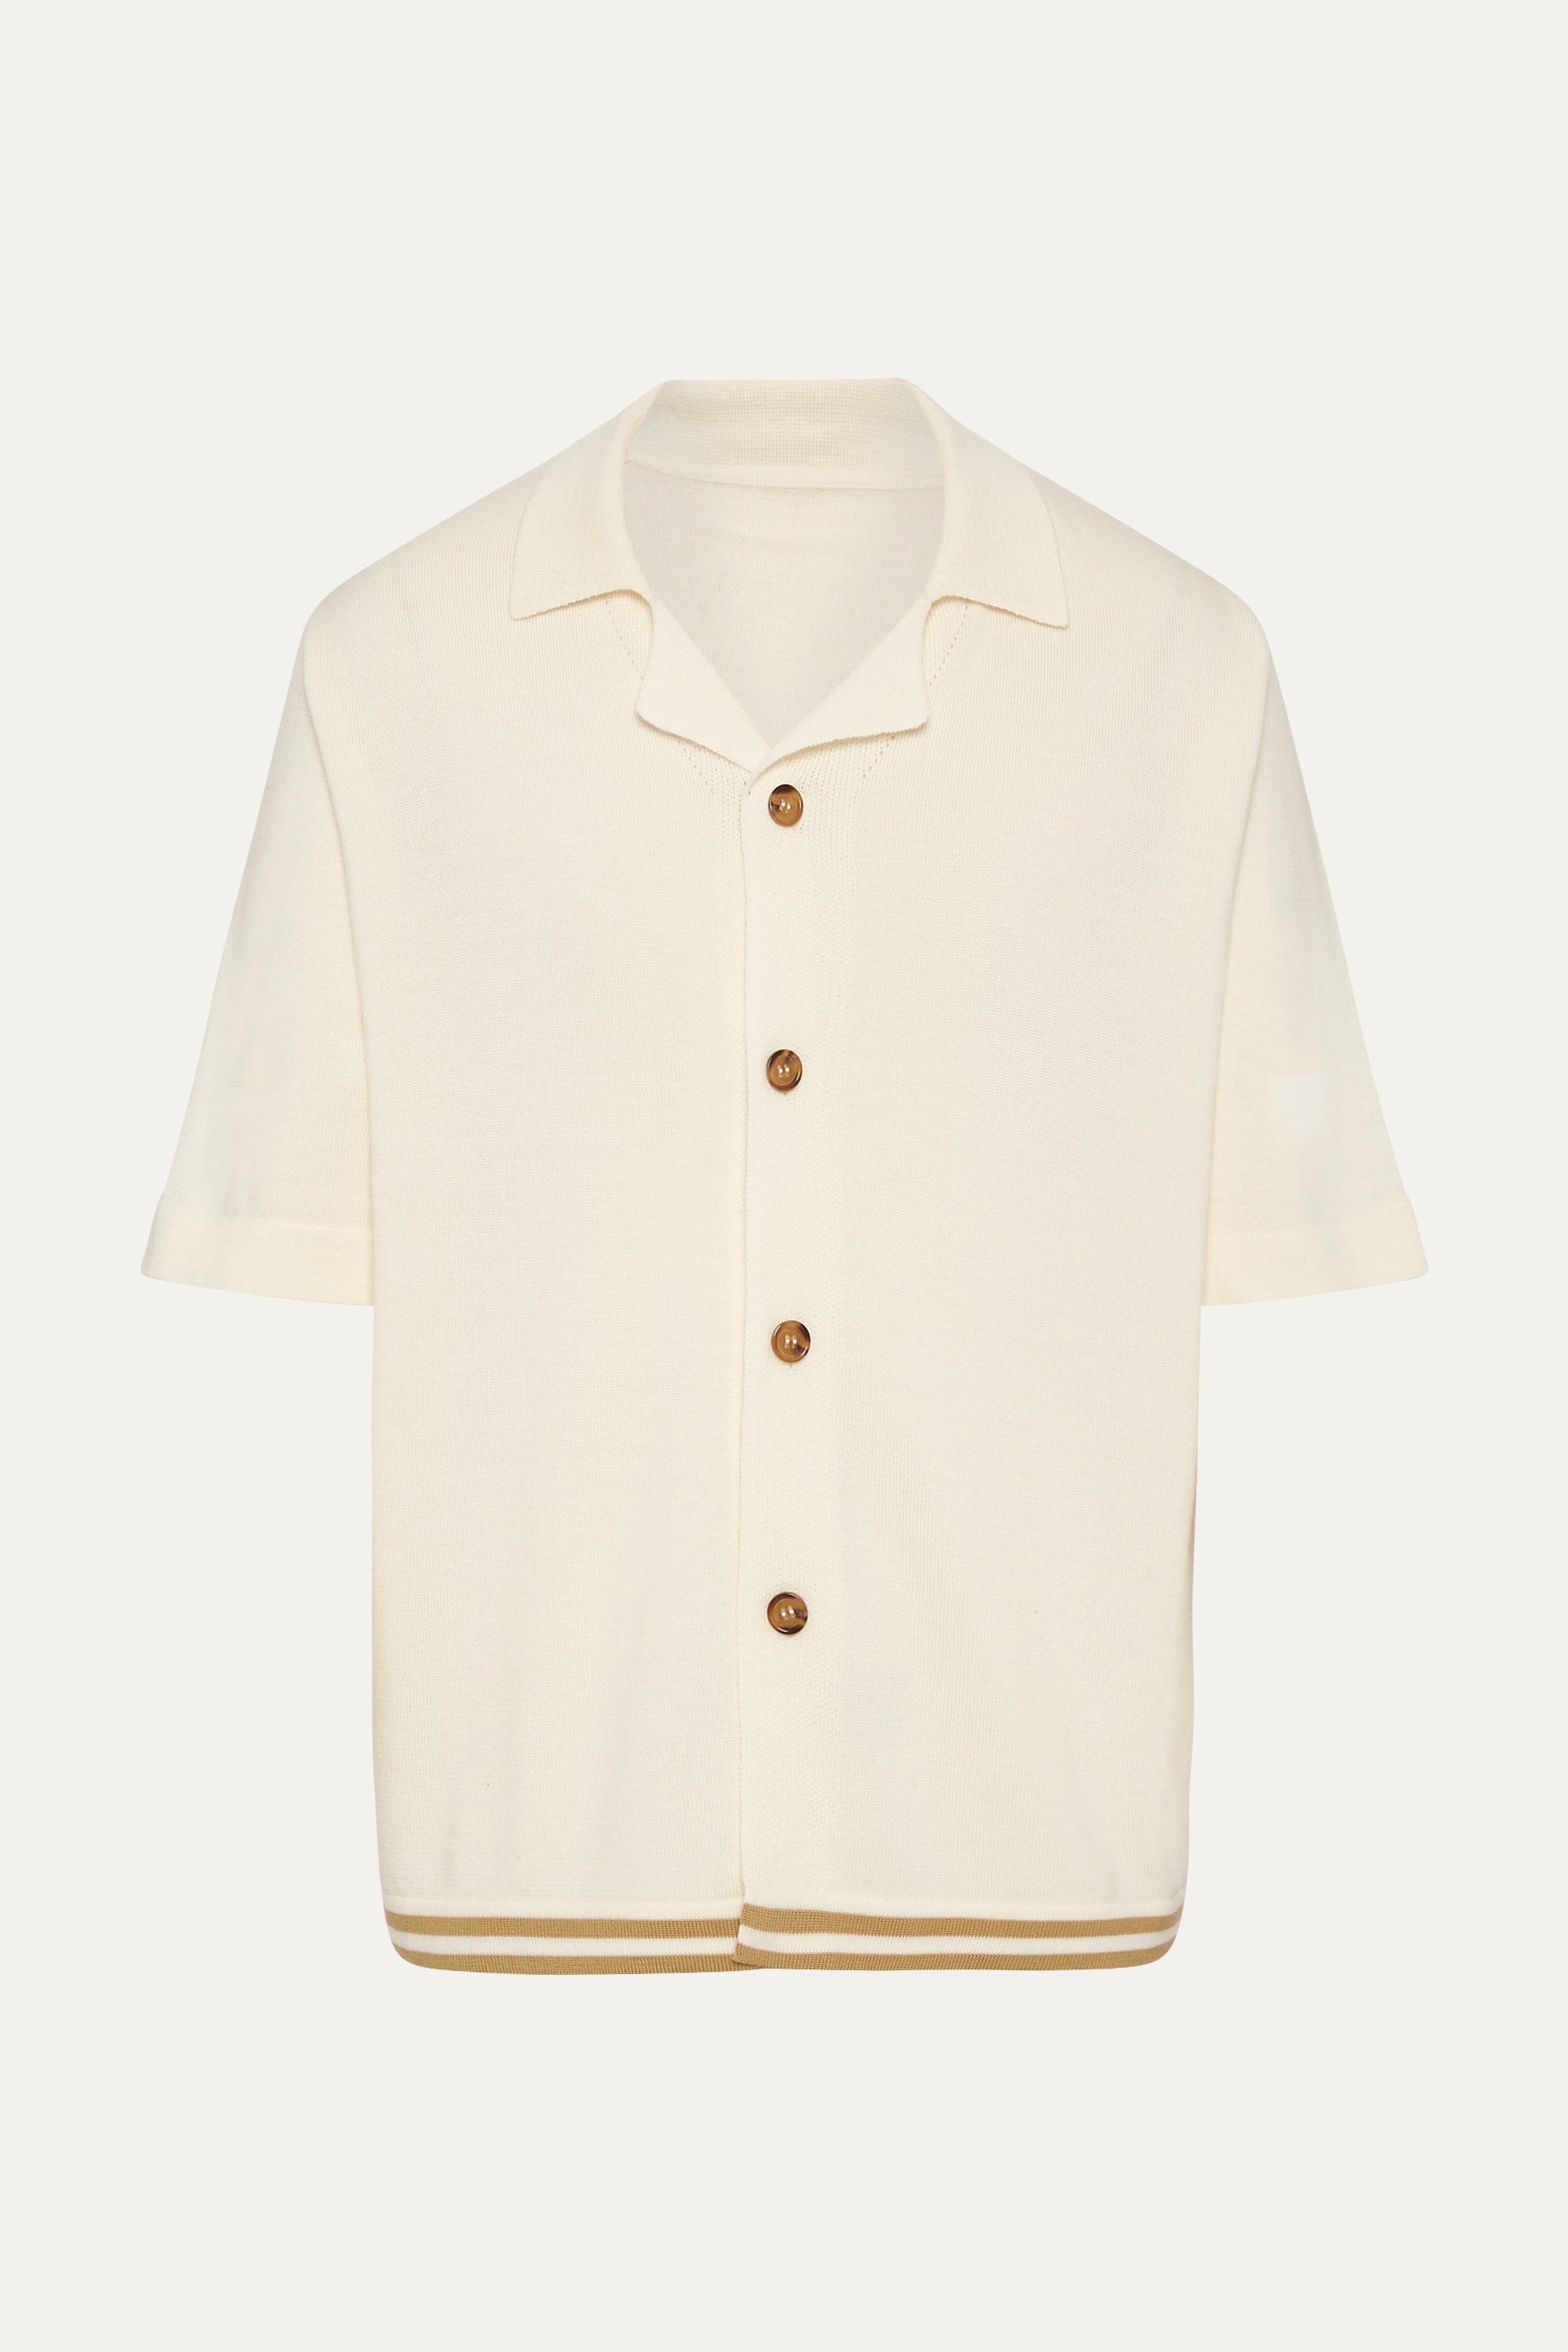 S/S Shirt in Cream & Tobacco Merino Wool